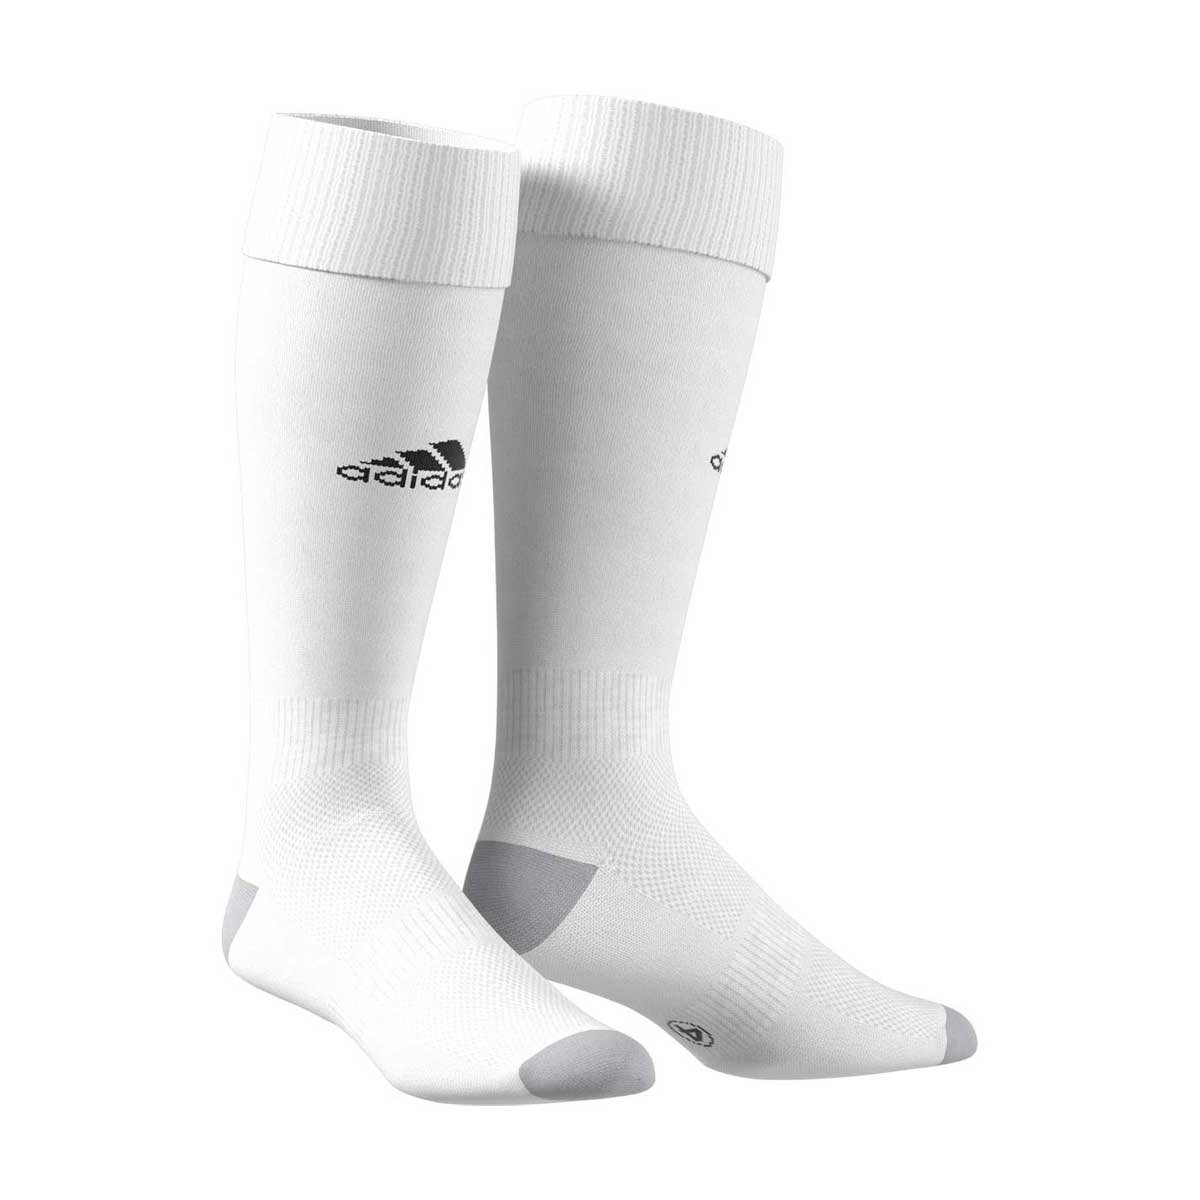 Calcetas Blancas Football Adidas para Hombre